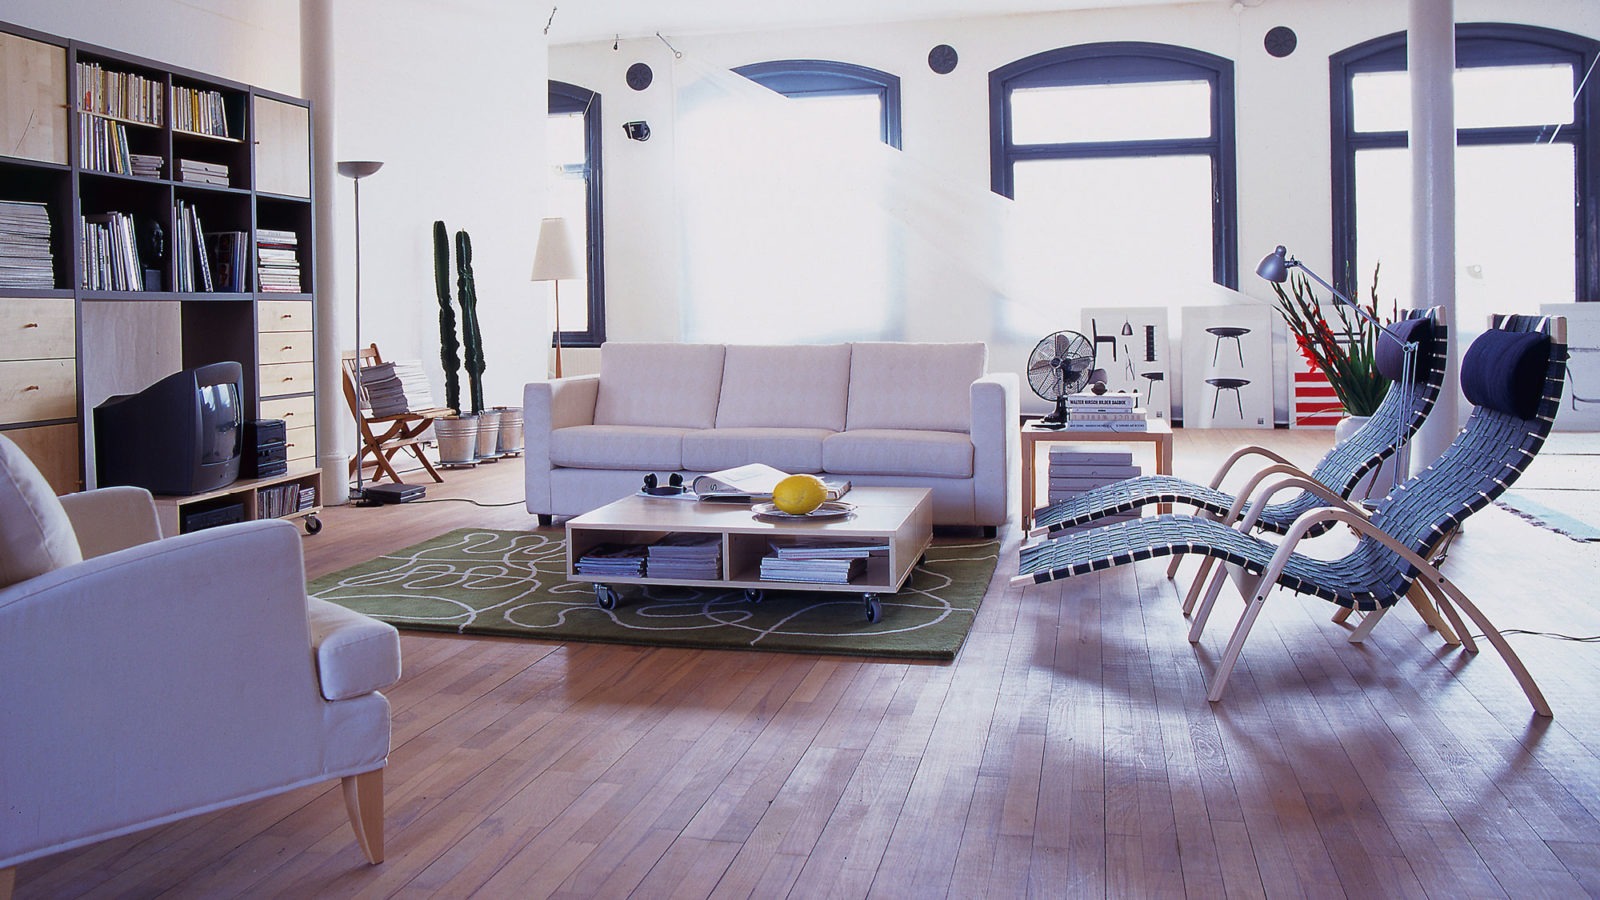 Riesiger Raum mit Säulen und Holzfußboden. Um einen niedrigen Couchtisch auf Rollen stehen ein Sofa, ein Sessel und zwei Liegesessel.